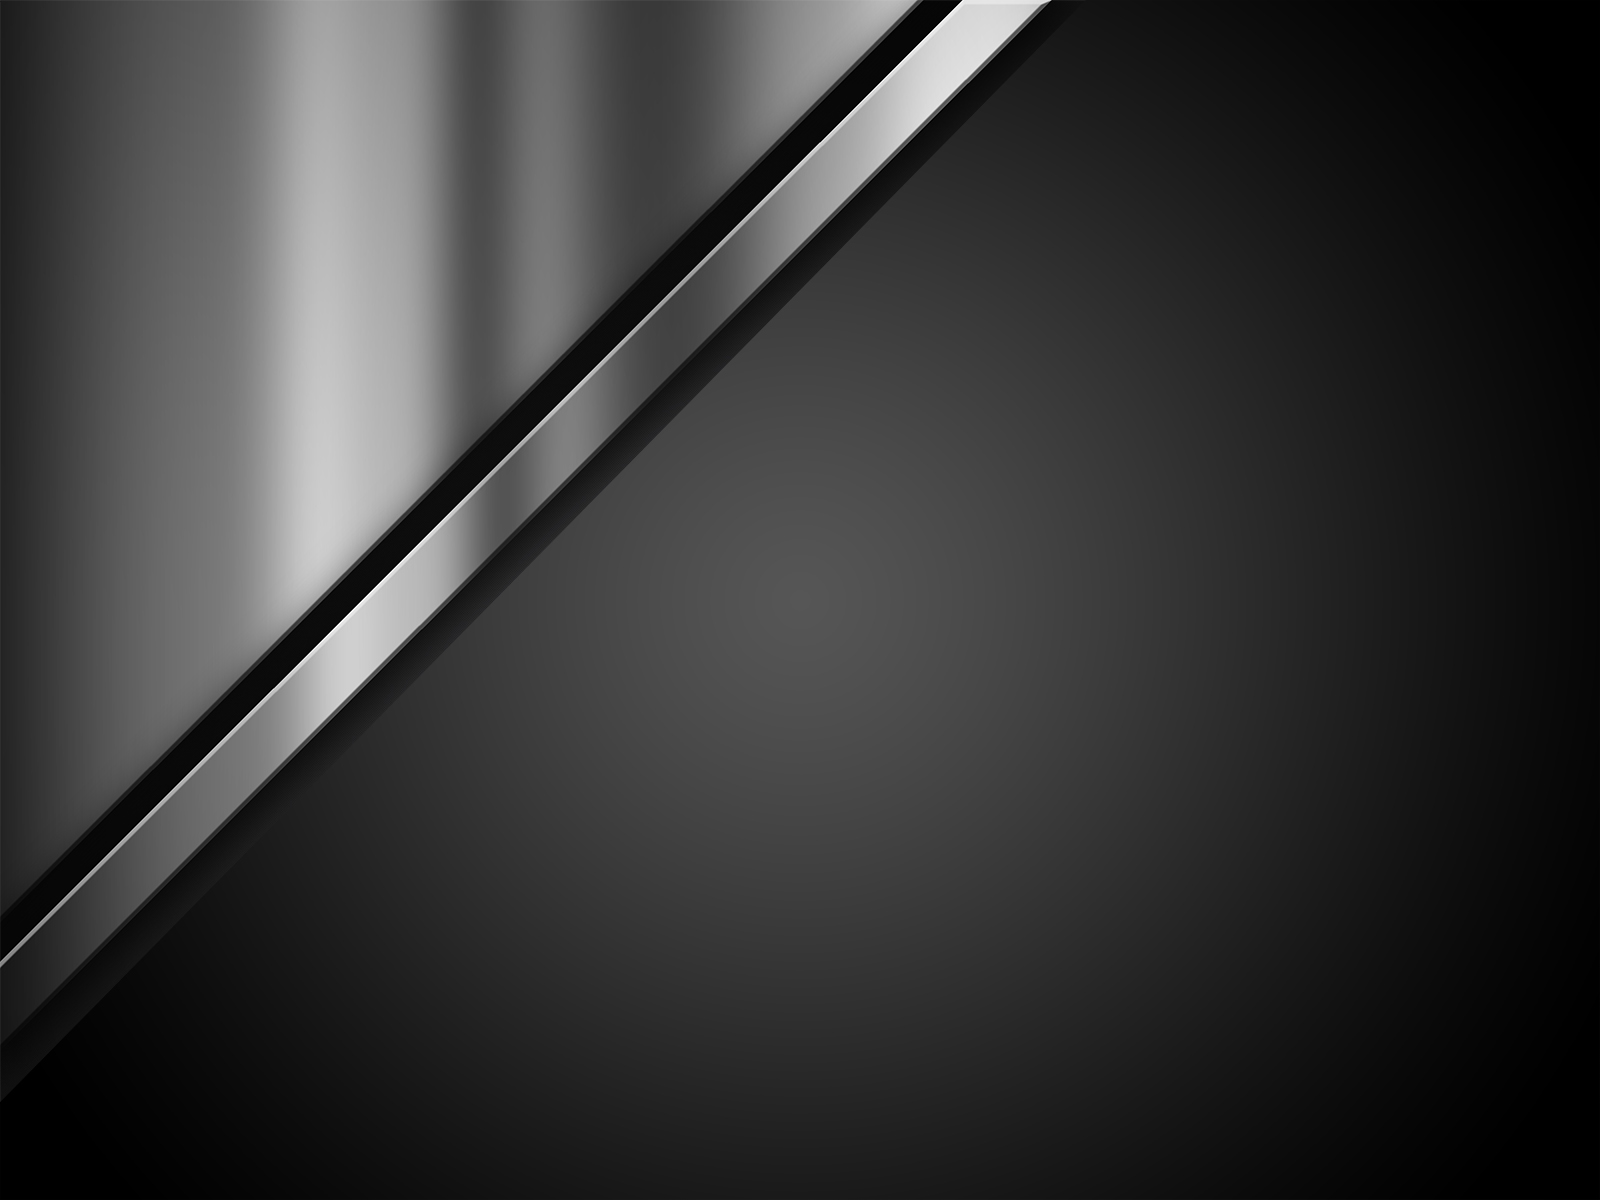 Hình nền màu sắt đen: Một hình nền đen sắt với ánh sáng lấp lánh đầy thú vị sẽ làm tăng tính cá tính cho chiếc máy tính, điện thoại hay máy tính bảng của bạn. Nó mang đến một hình ảnh hiện đại và đầy khí động cho thiết bị của bạn.